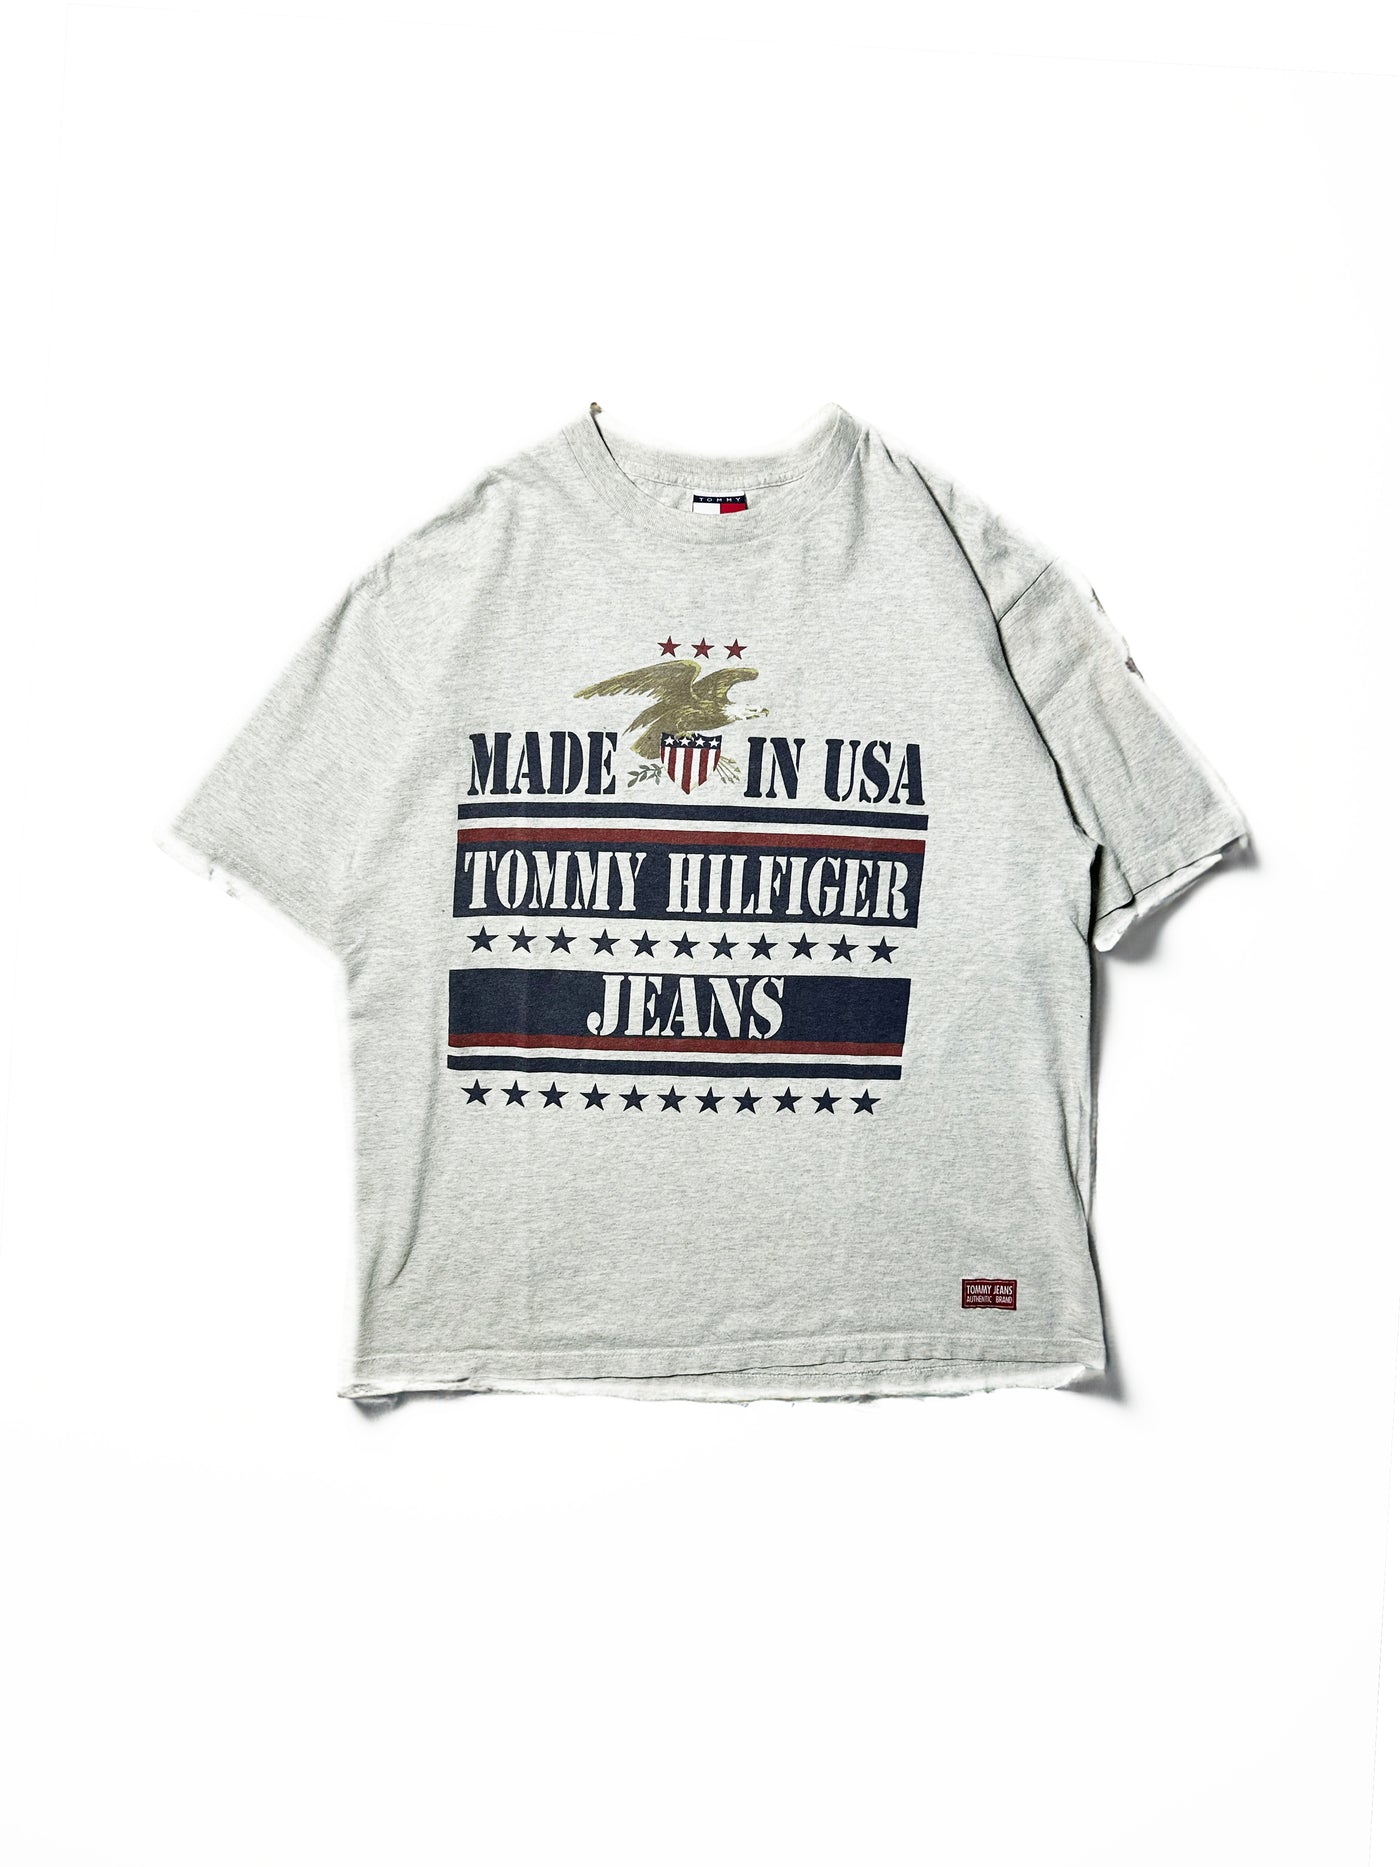 Vintage 90s Tommy Hilfiger Athletic T-Shirt